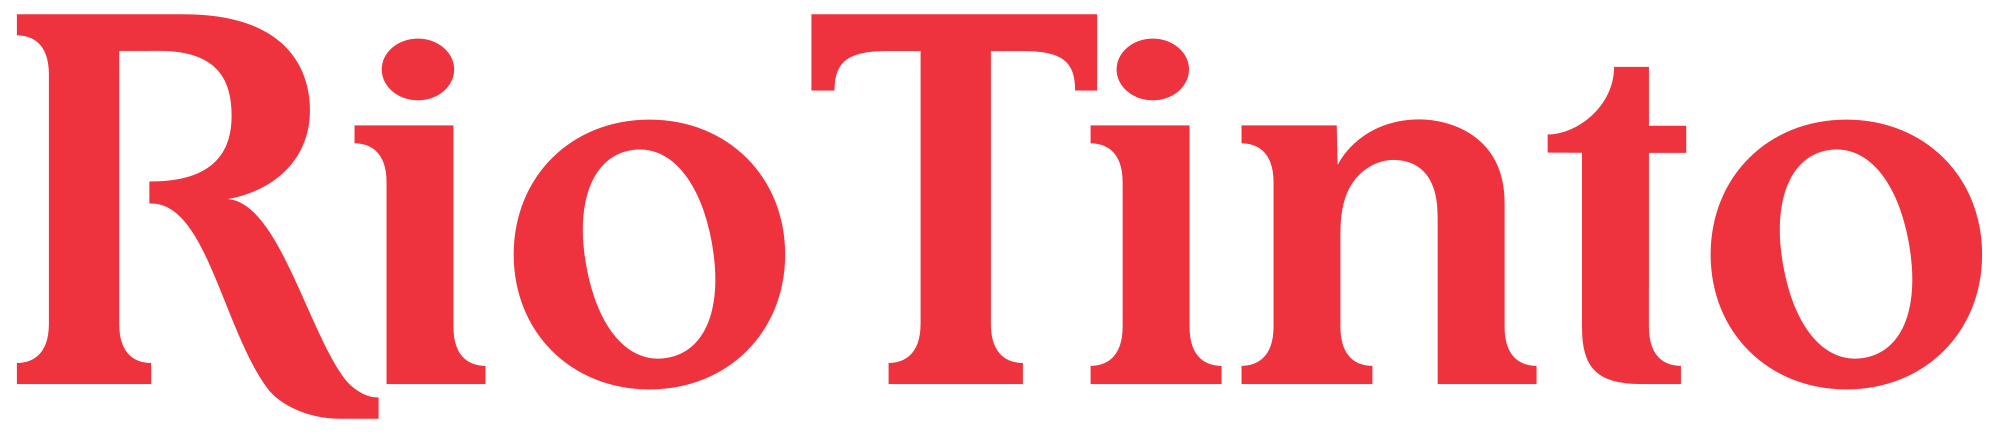 Rio-Tinto-logo